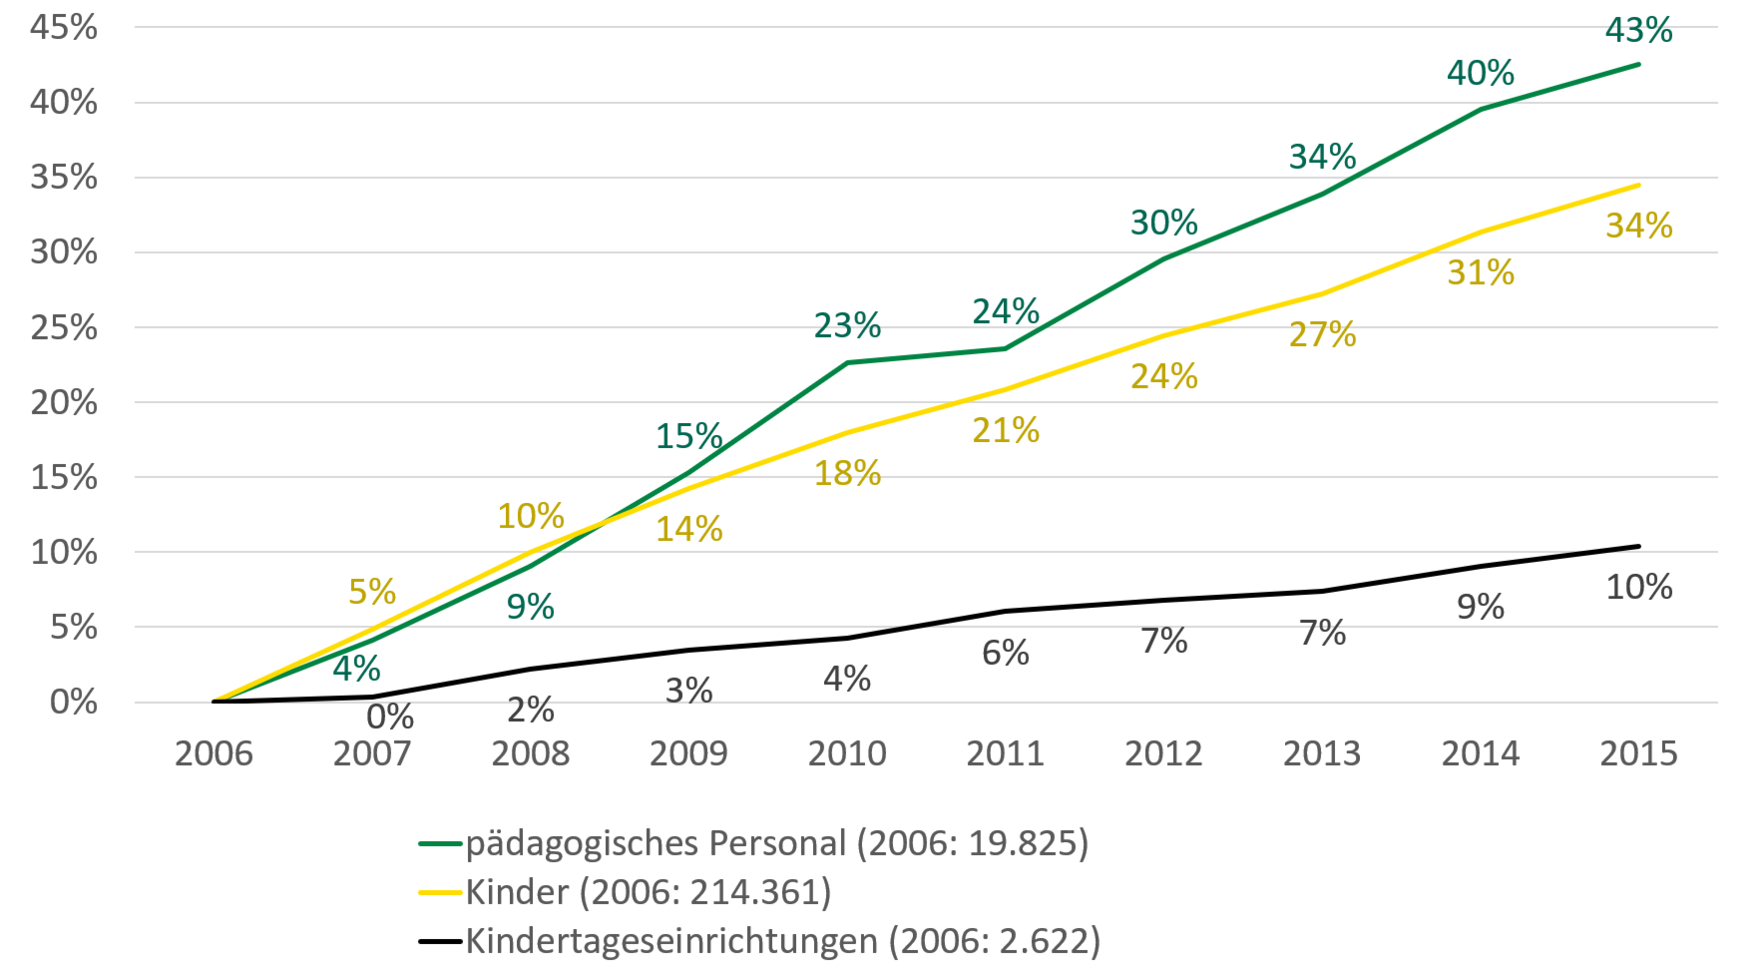 Von 2006 bis 2015 stieg die Anzahl des pädagogischen Personals um 43 Prozent, die der Kinder um 34 Prozent und die der Kindertageseinrichtungen um 10 Prozent.